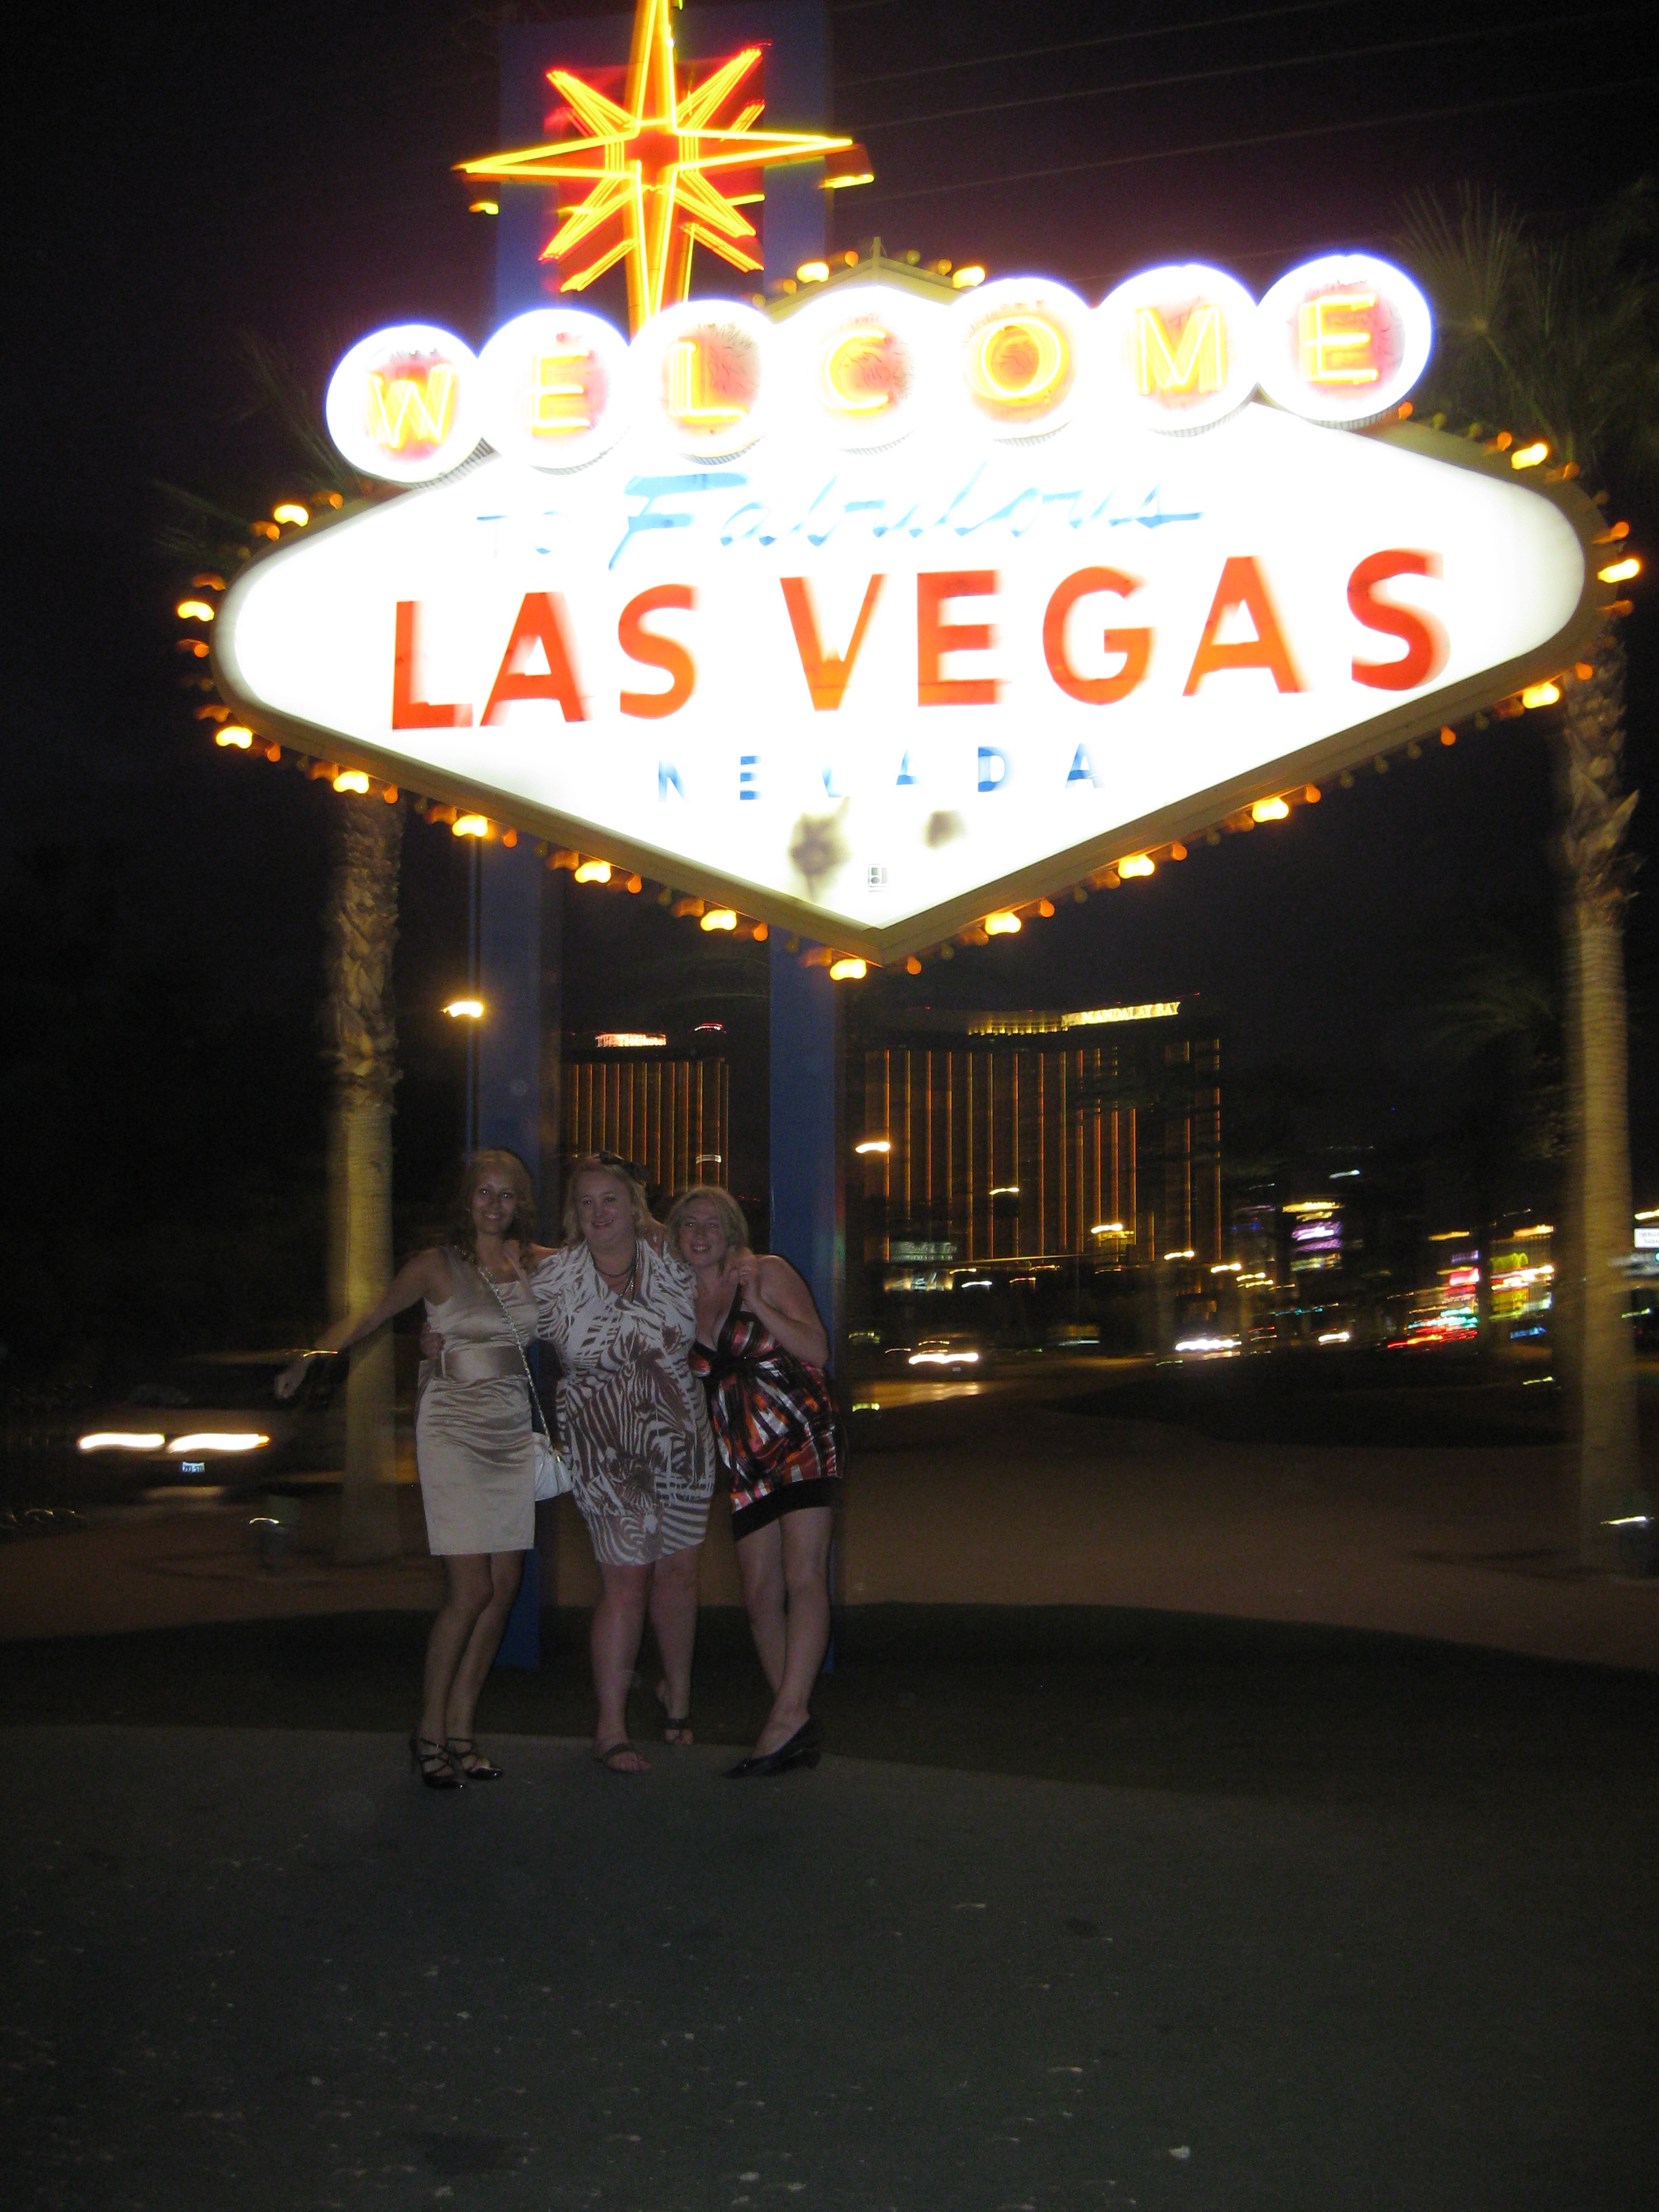 Vegas baby